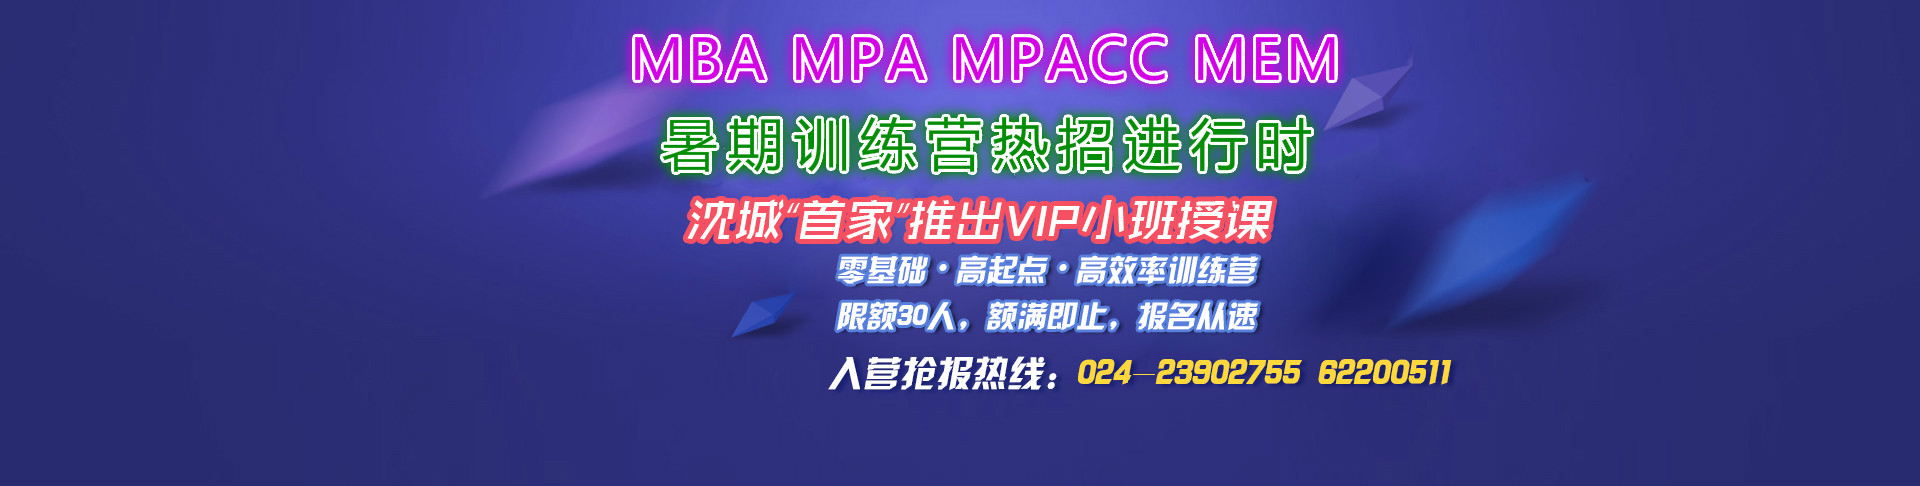 沈阳华章2016名校MBA/MPA/MPACC/MEM “暑期训练营”热招